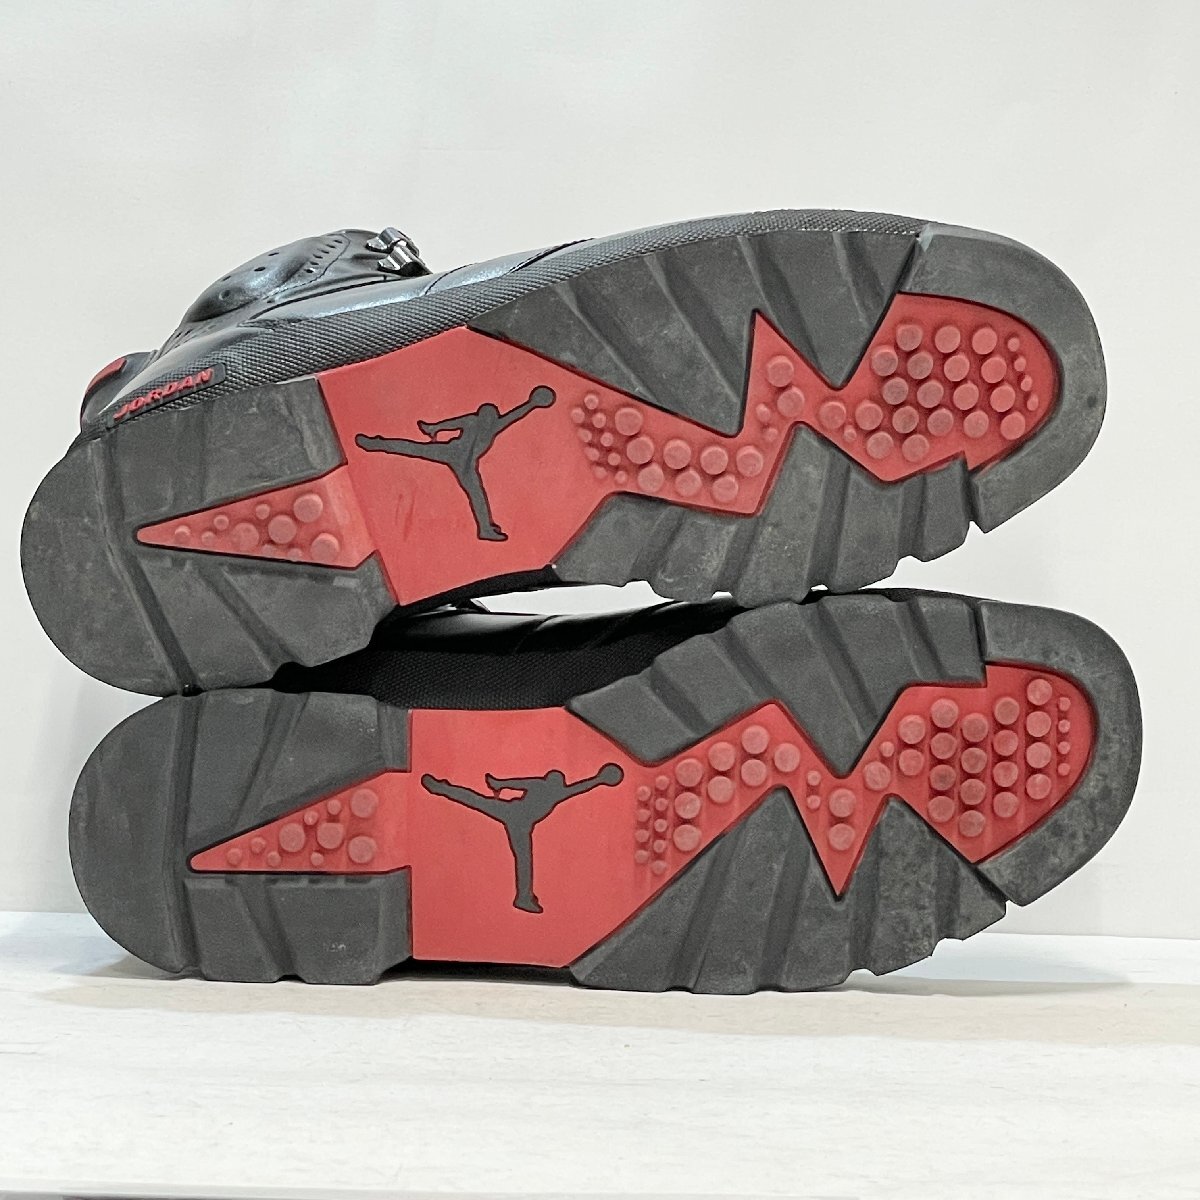 30cm JORDAN AJB6 303897-001 air Jordan boots 6 bar City red men's sneakers IN H105663